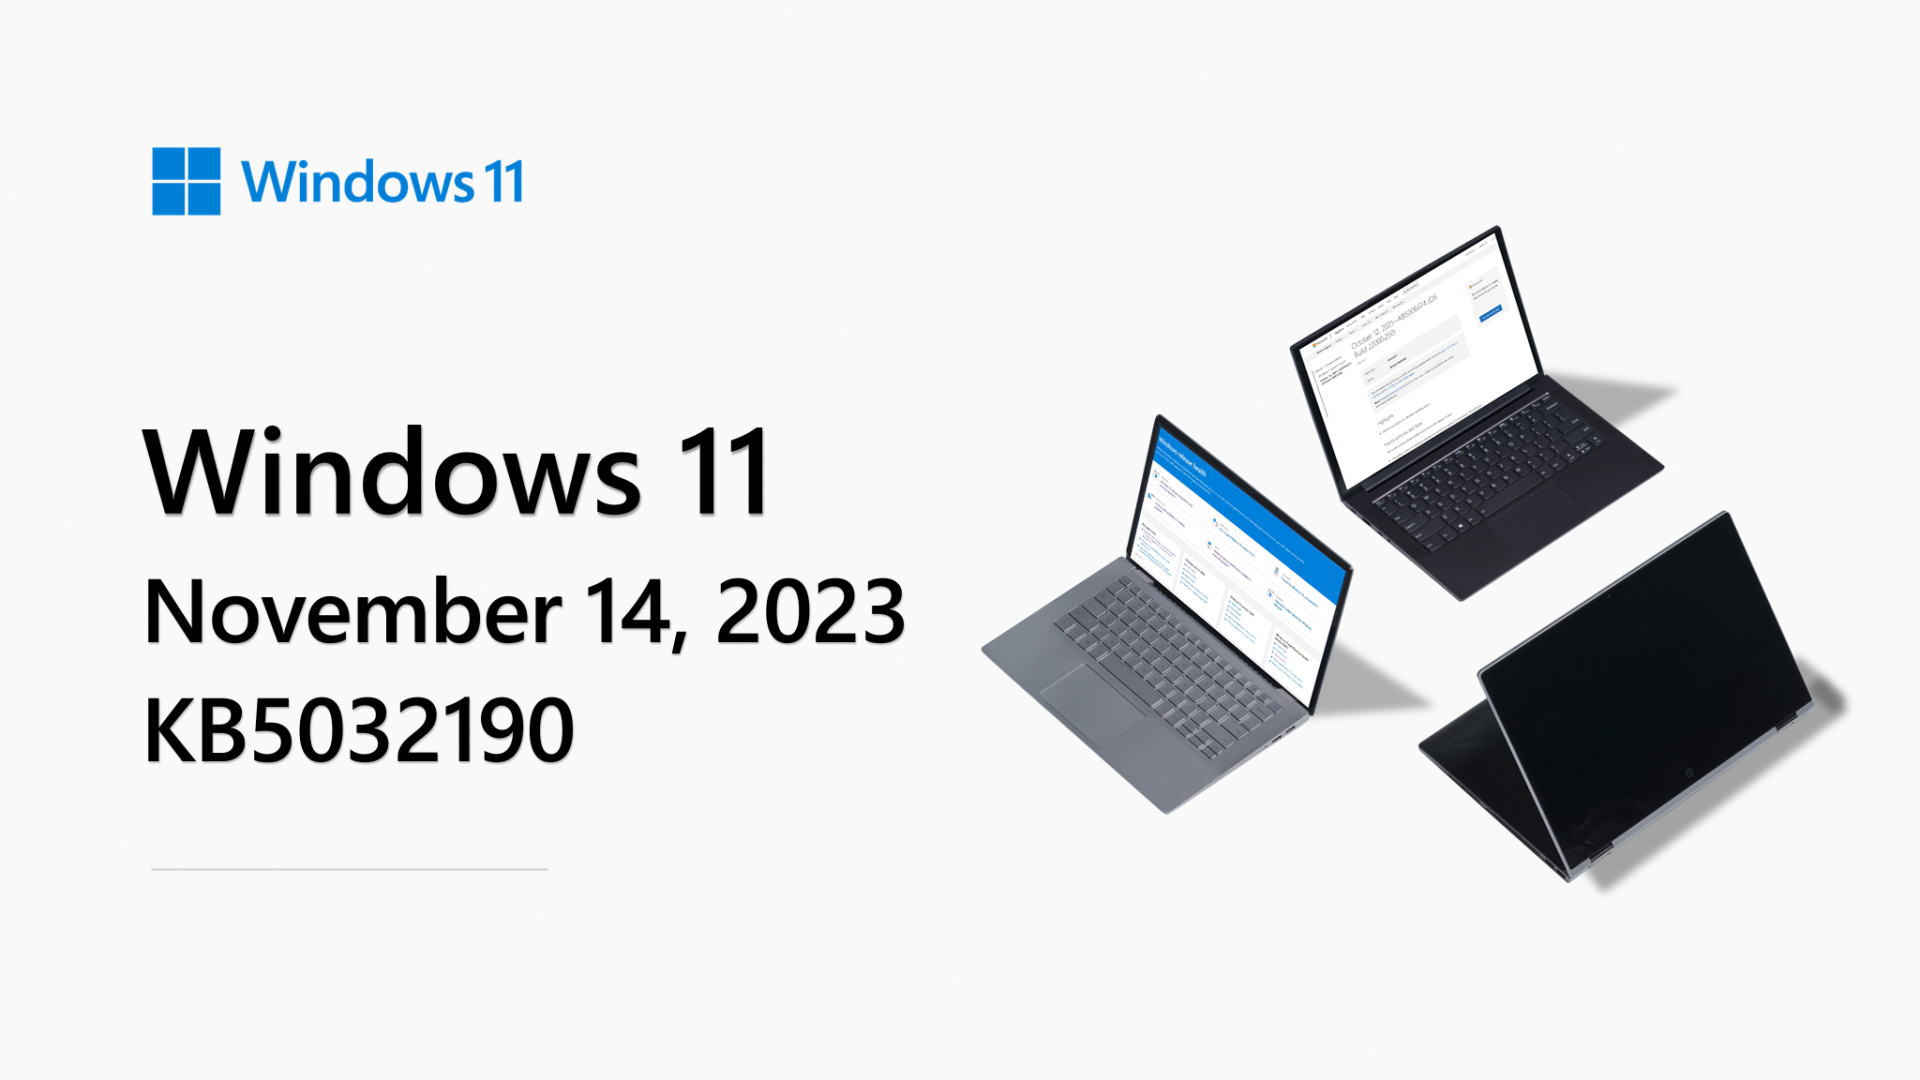 Microsoft publica guia para optimizar o desempenho do Windows 11 em jogos